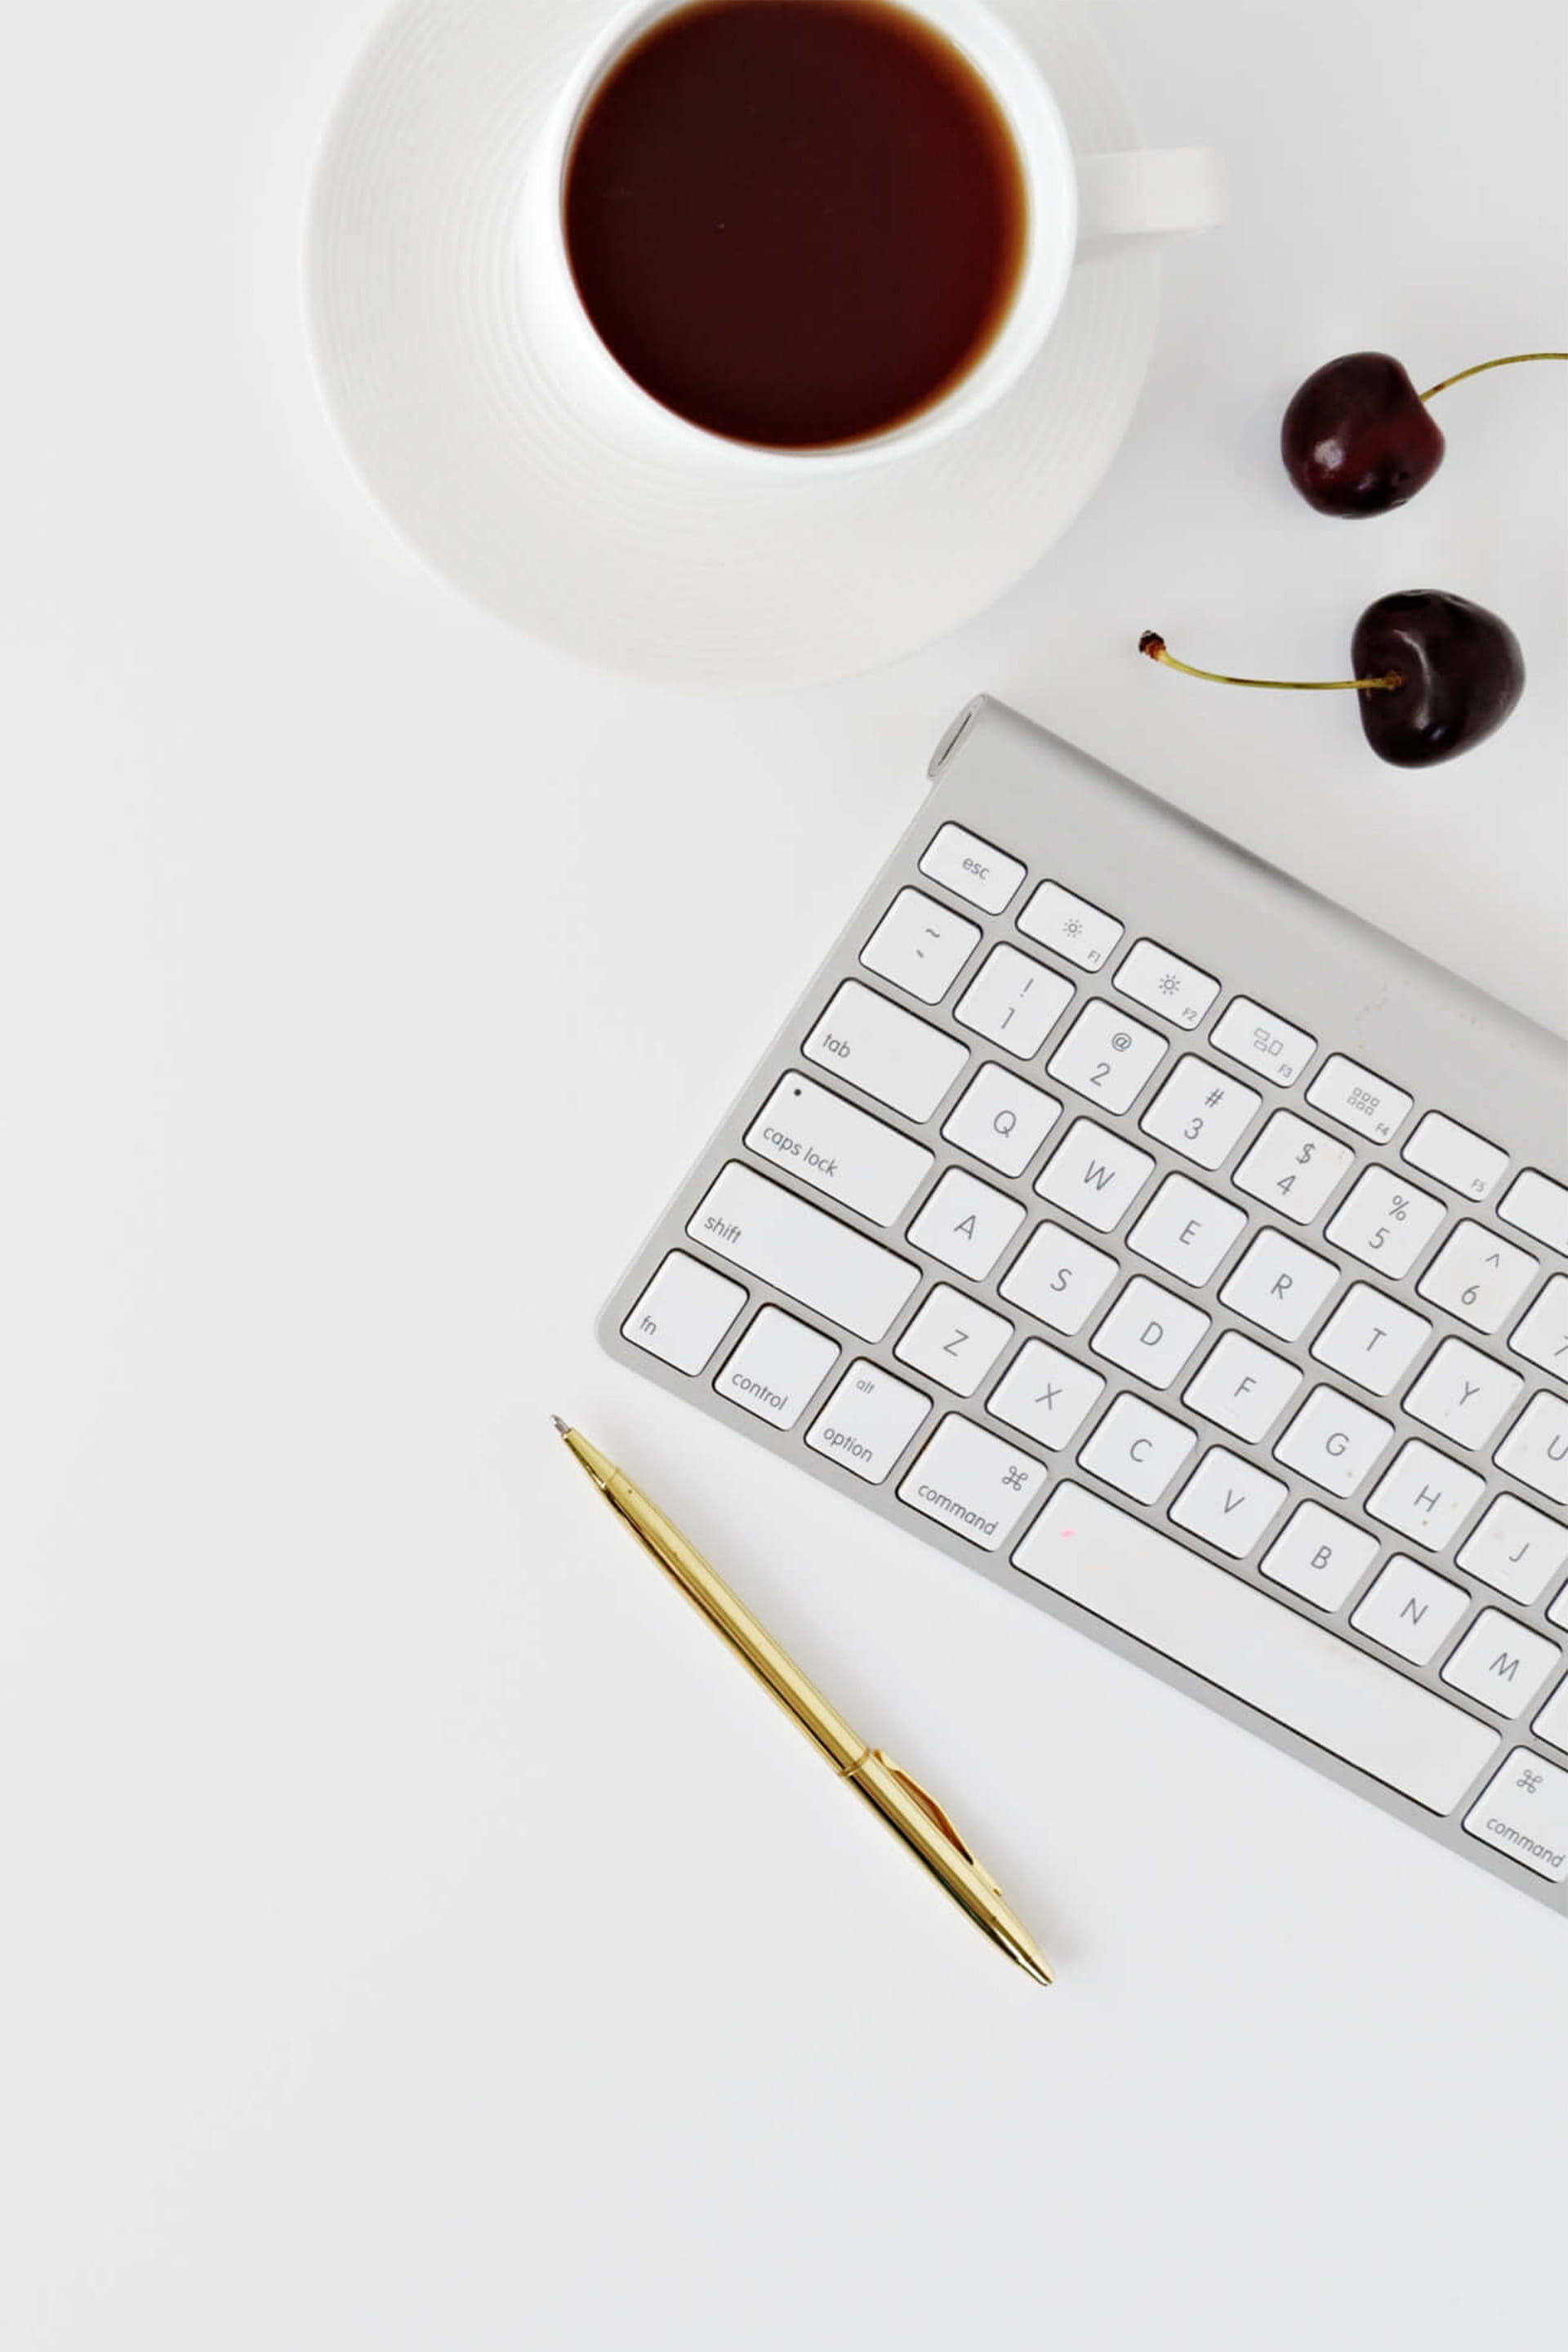 Moderner weißer Schreibtisch mit Tastatur, Kaffee und Kirschen, der Minimalismus zur Schau stellt.